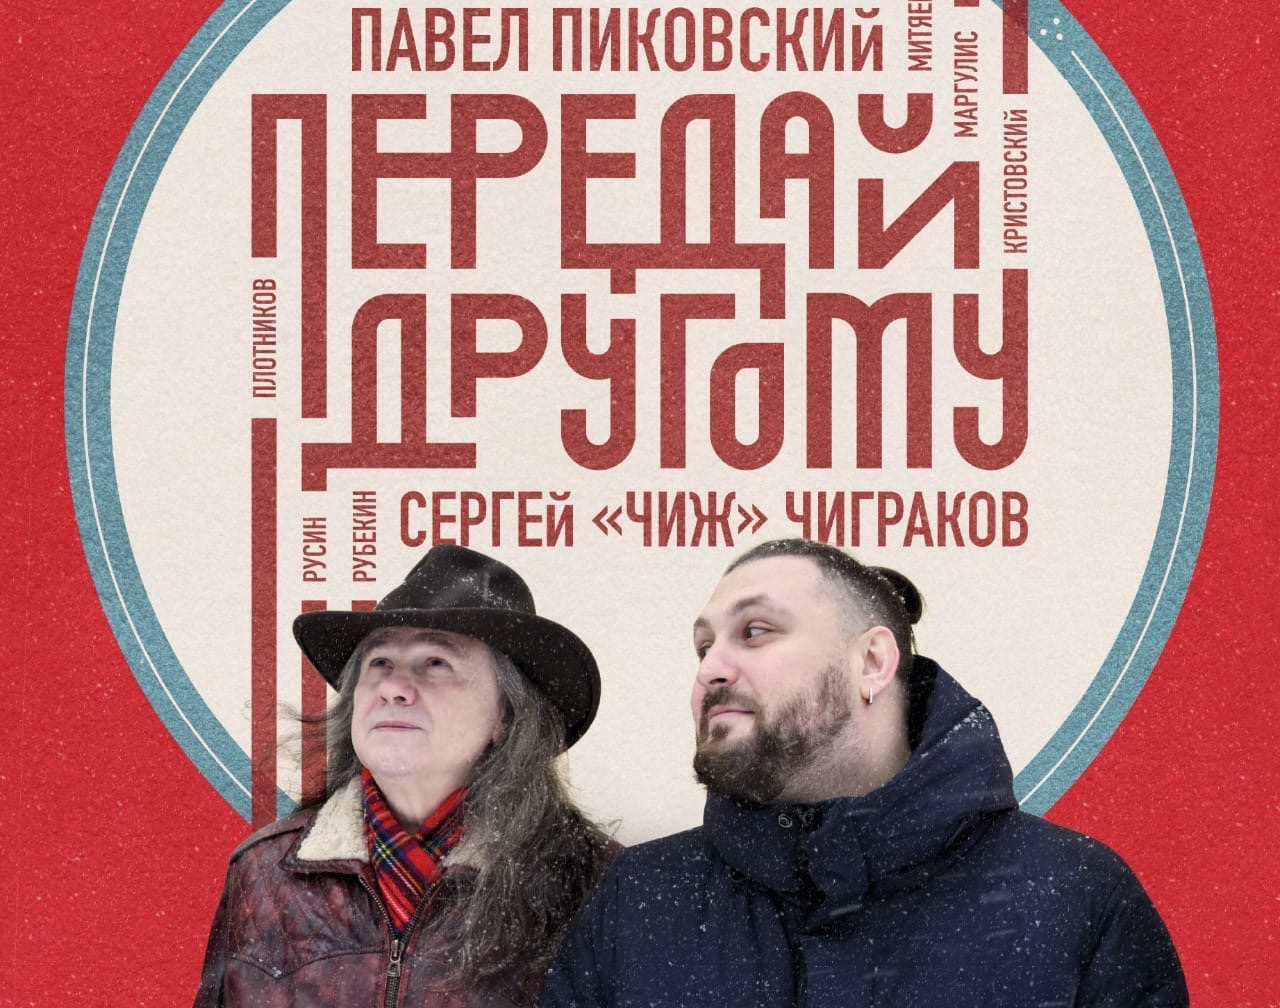 Обложка совместного альбома Павла Пиковского и Сергей Чигракова «Передай другому».